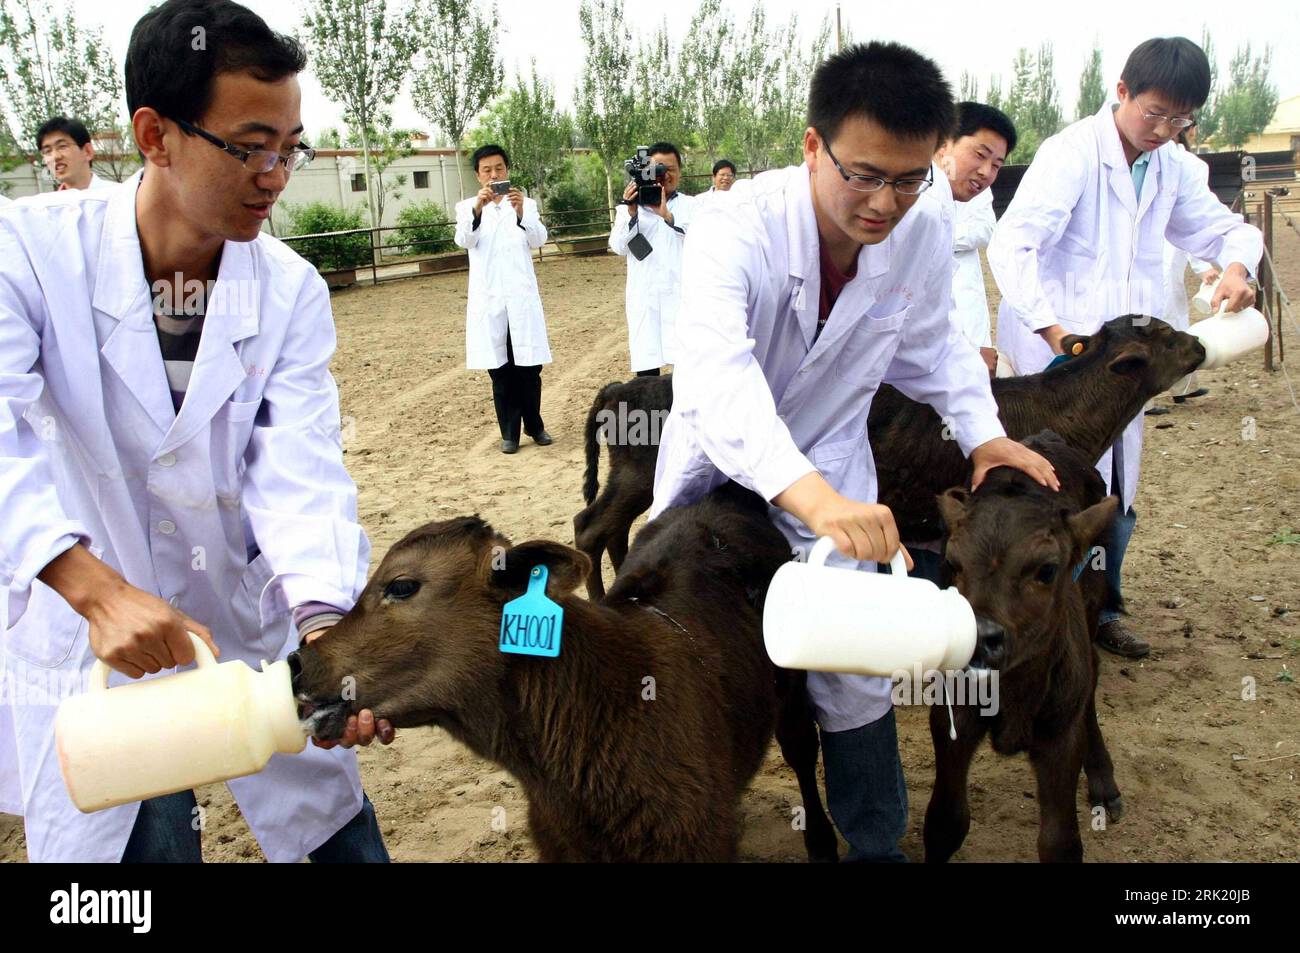 Wissenschaftler füttern geklonte Kälber in Baotou in der chinesischen autonomen Region Innere Mongolei : chinesischen Wissenschaftlern ist es gelungen, fünf Bullenkälber zu klonen - PUBLICATIONxNOTxINxCHN Banque D'Images